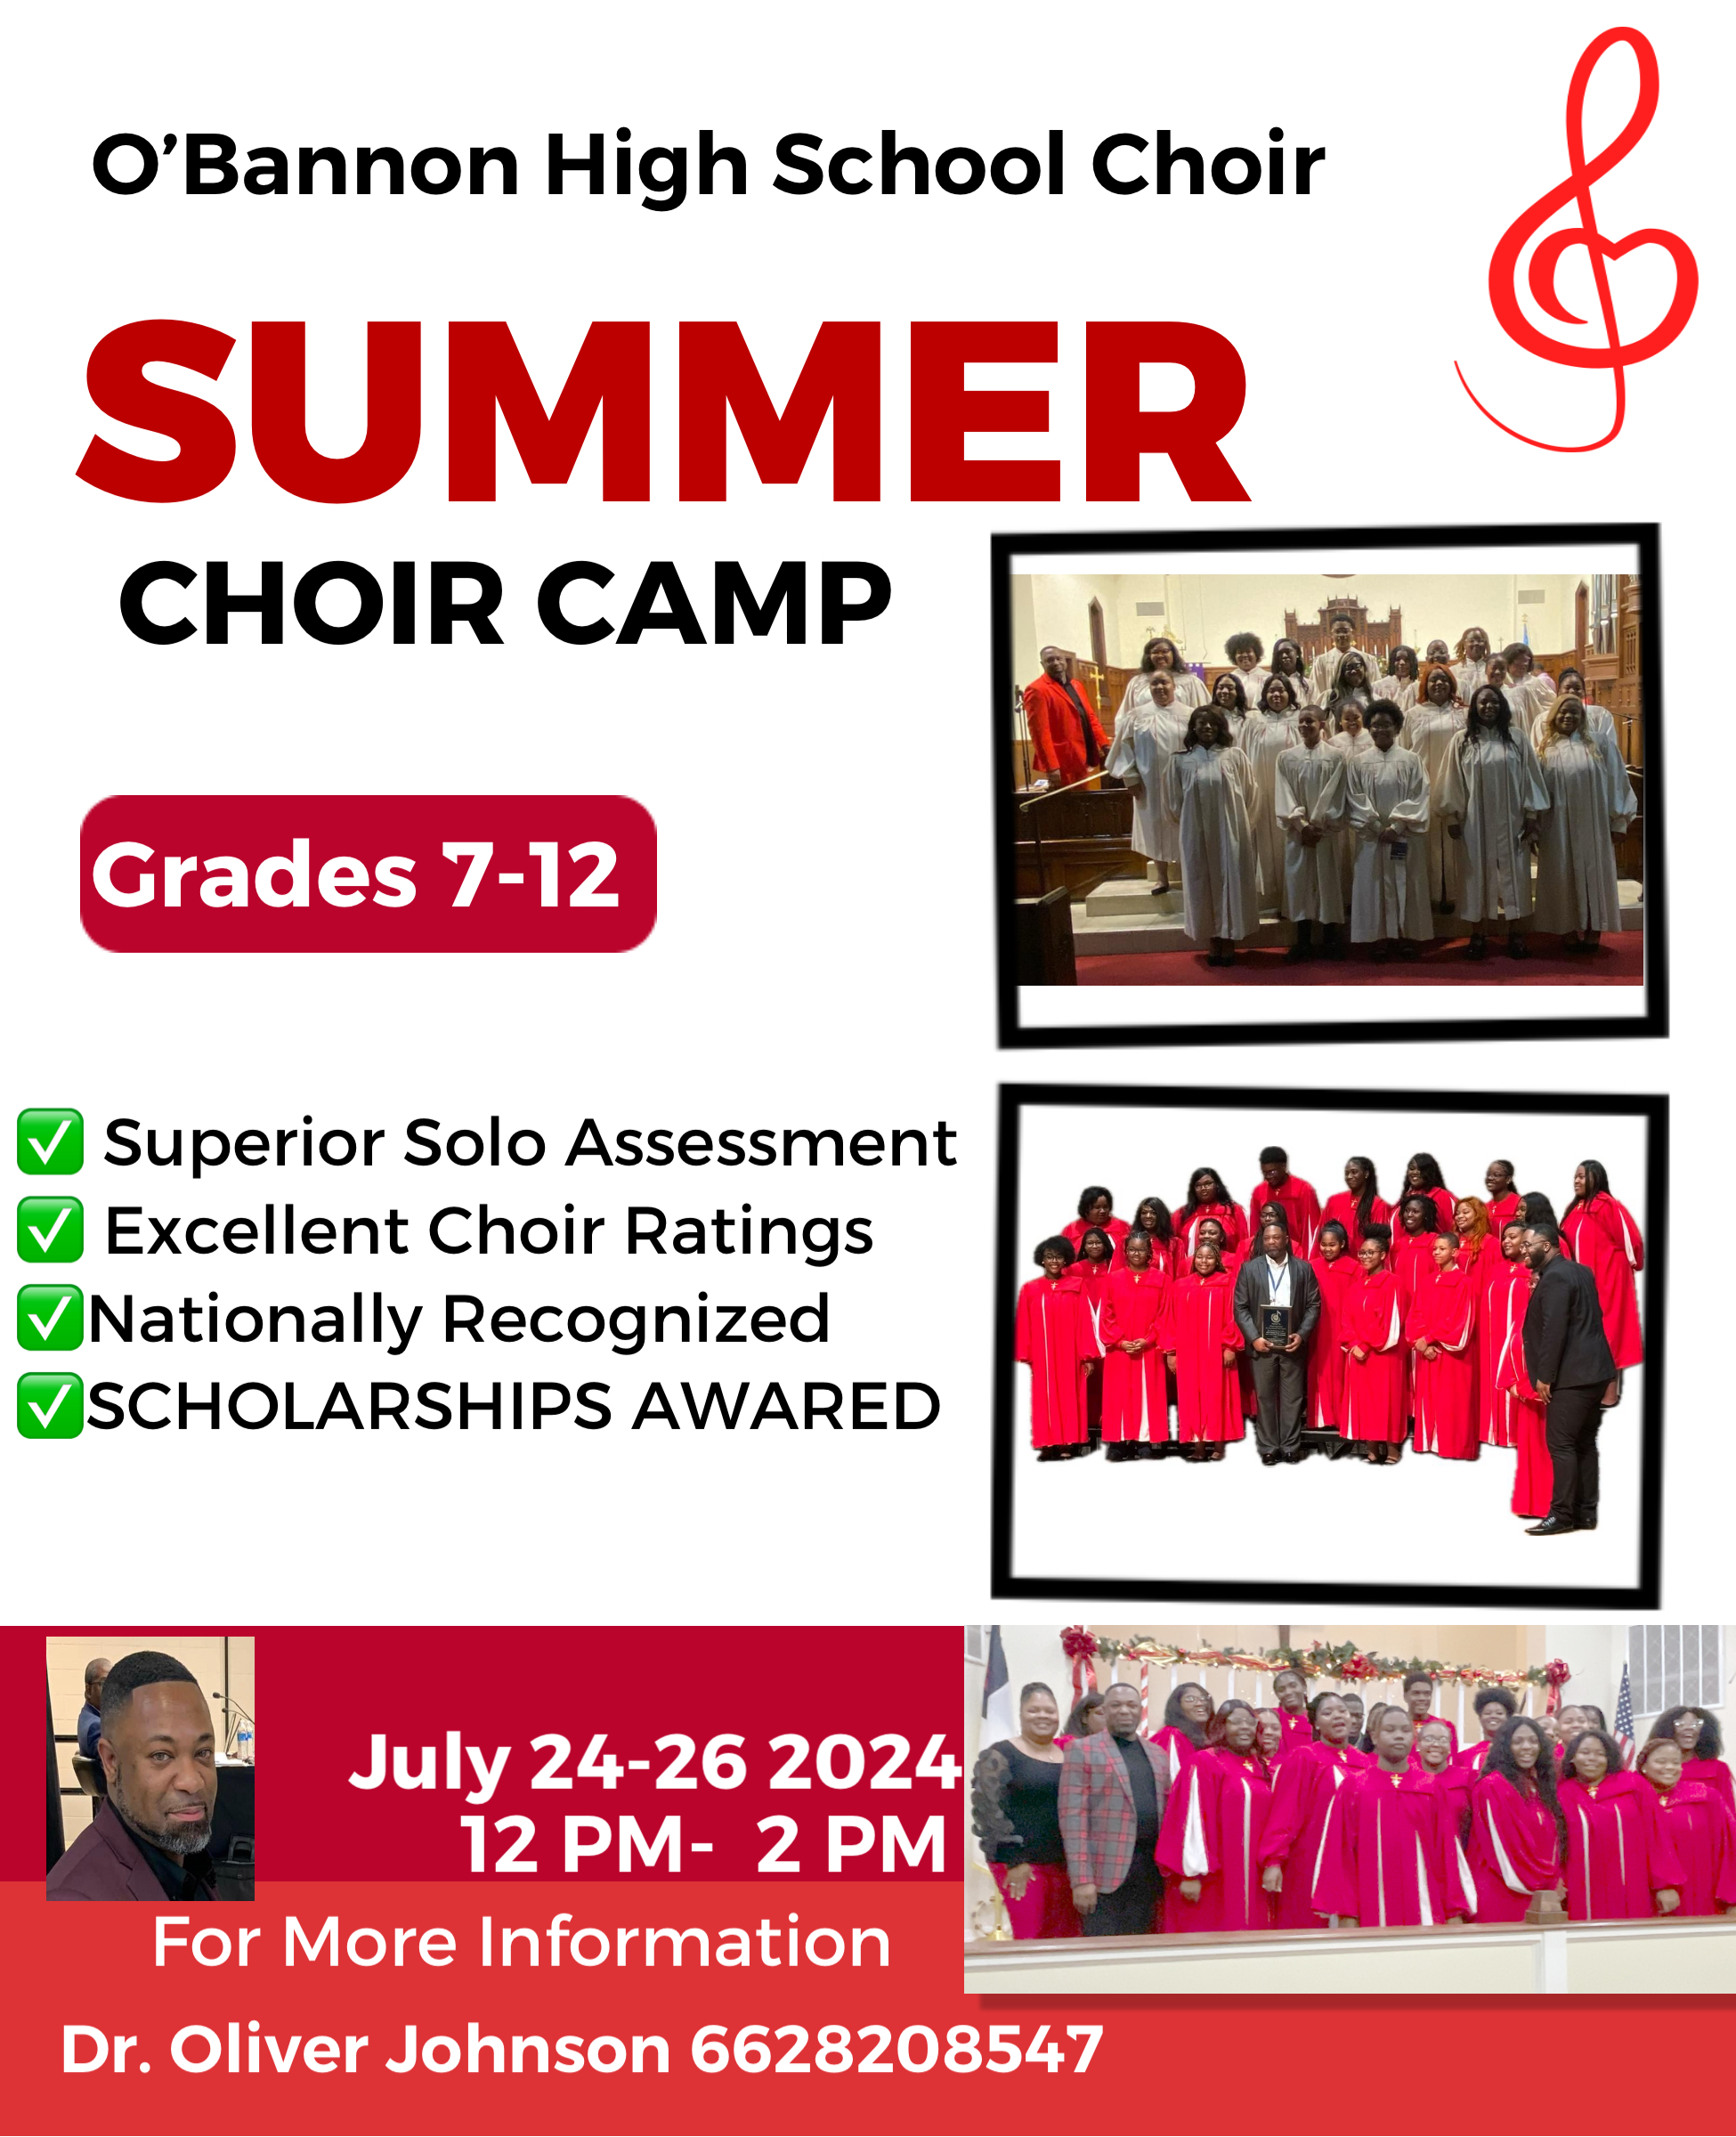 Choir camp